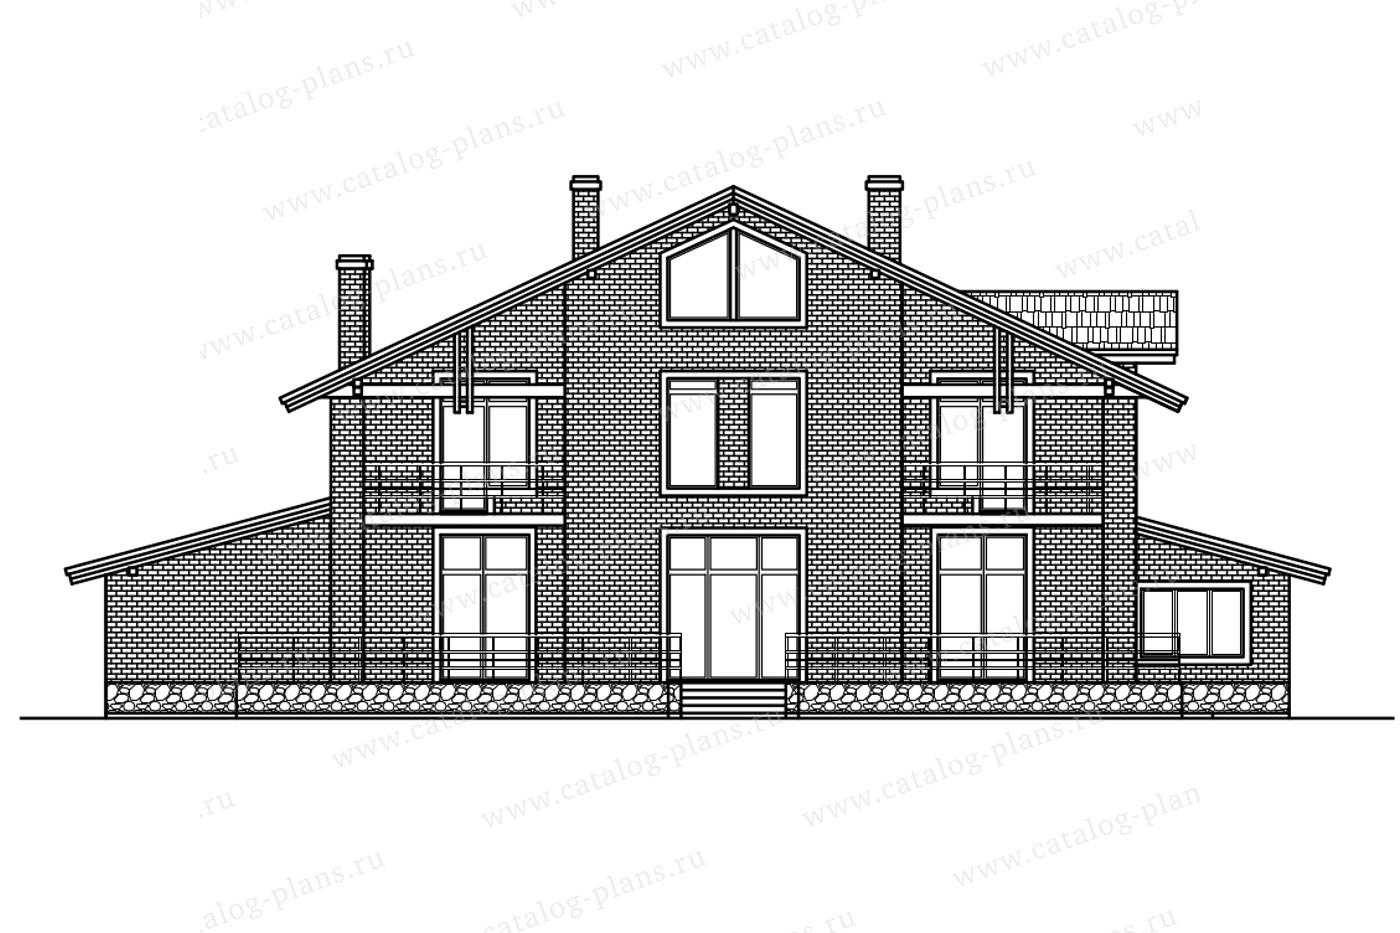 Проект 58-02BL, жилой дом, материал - газобетонные блоки 400, количество этажей - 2, архитектурный стиль - европейский, фундамент - монолитная ж/б плита